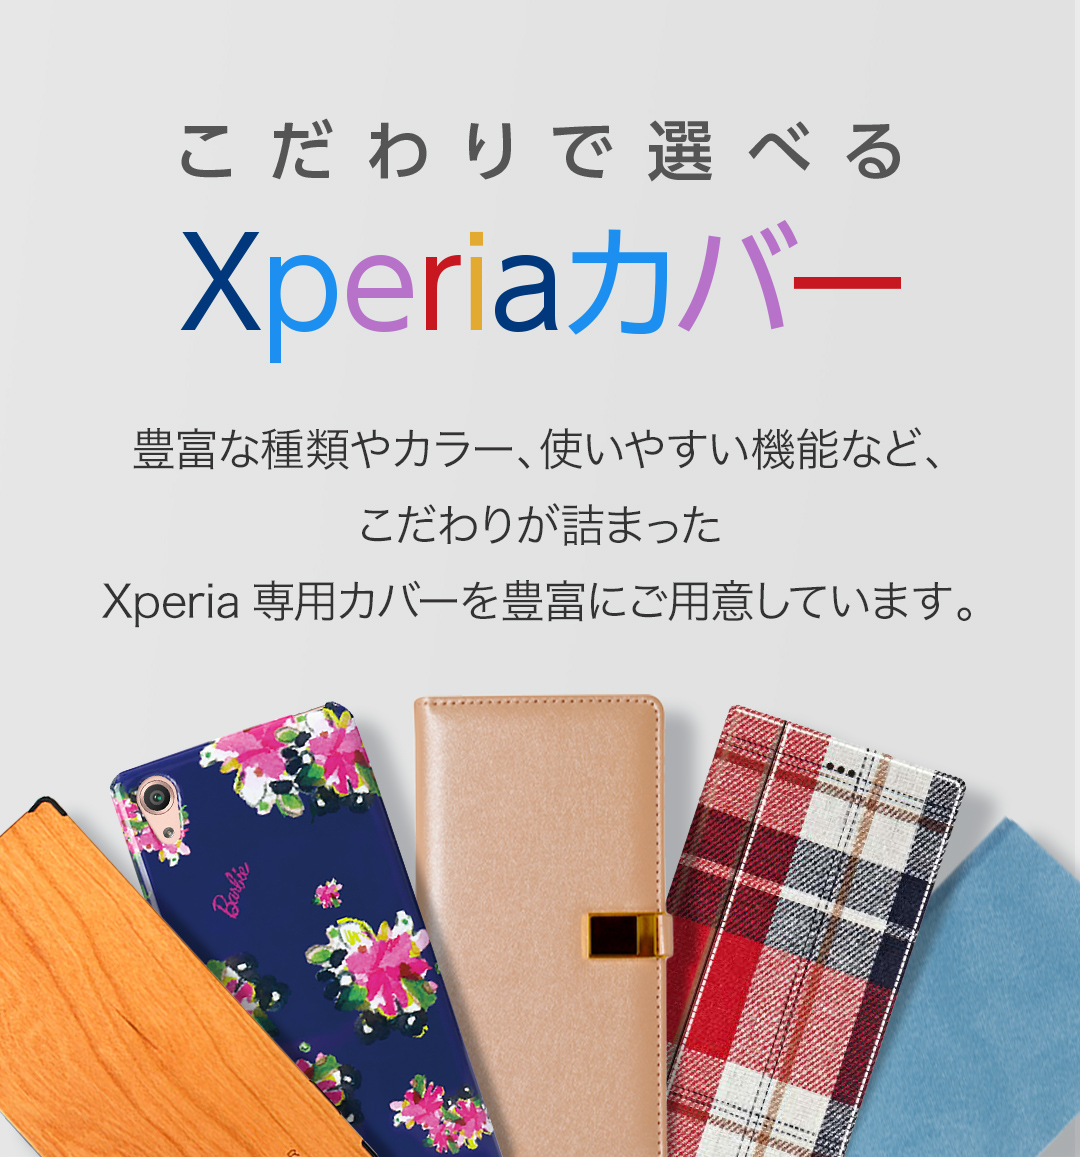 お世話になった 酸素 名前 Xperia Z1 ケース アニメ Bslim Coco Jp